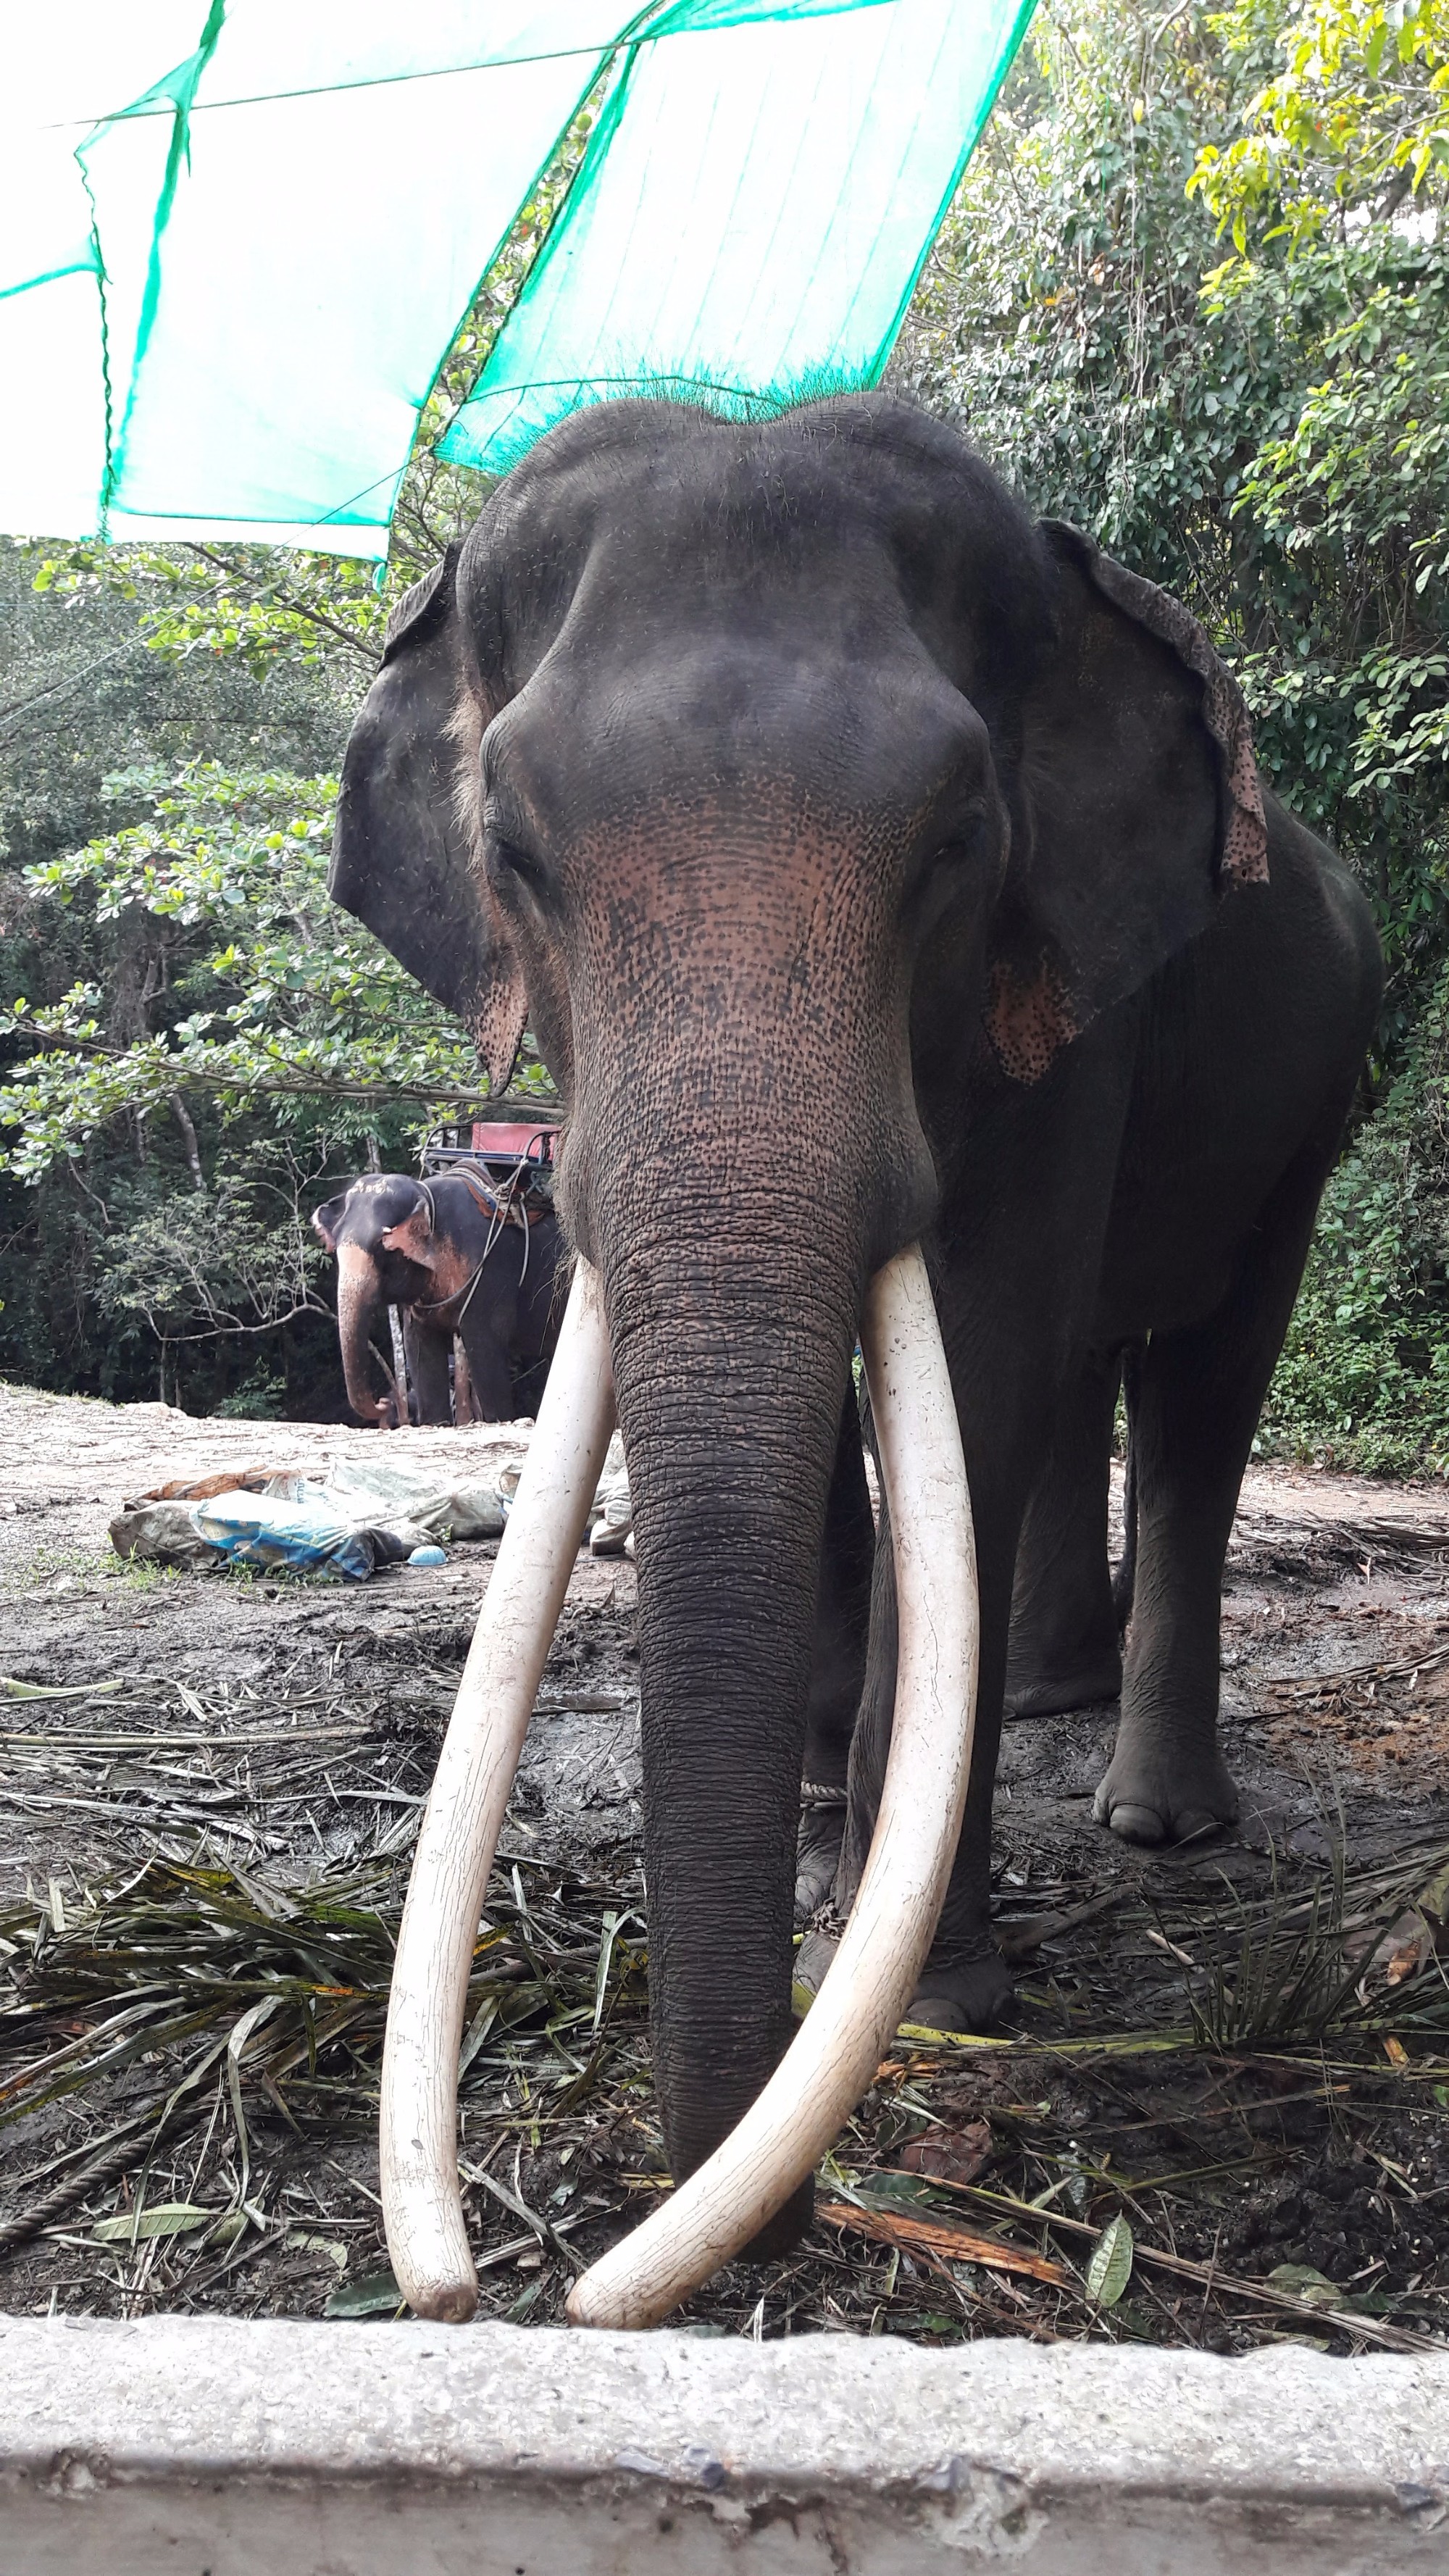 На острове Самуи можно заказать экскурсию на Слоновью ферму — покормить и покататься на слонах<br/>
You can go to the Elephant's farm, where you can feed and ride an elephant.